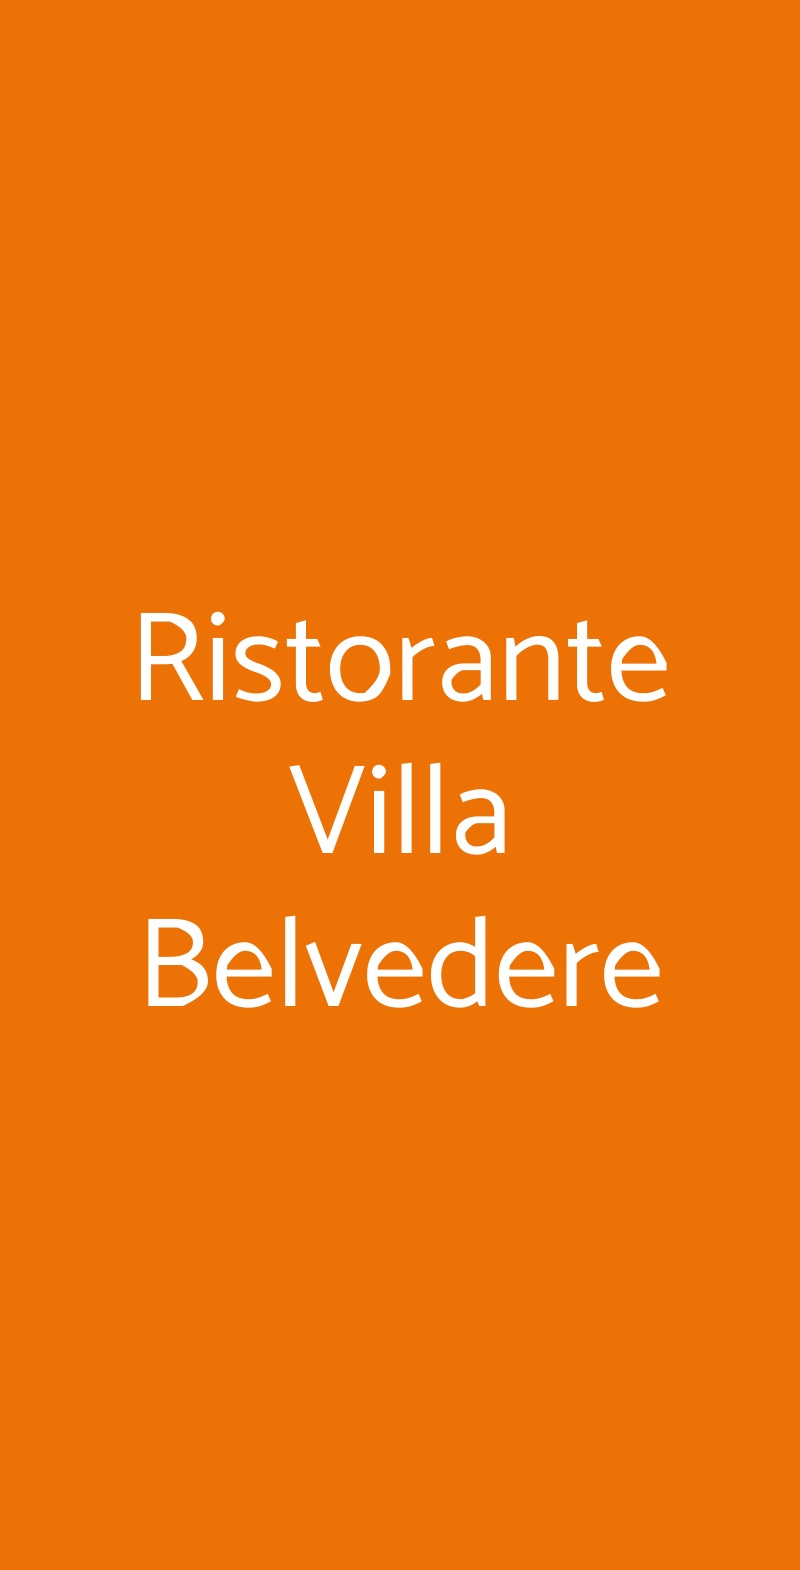 Ristorante Hotel Villa Belvedere Argegno menù 1 pagina